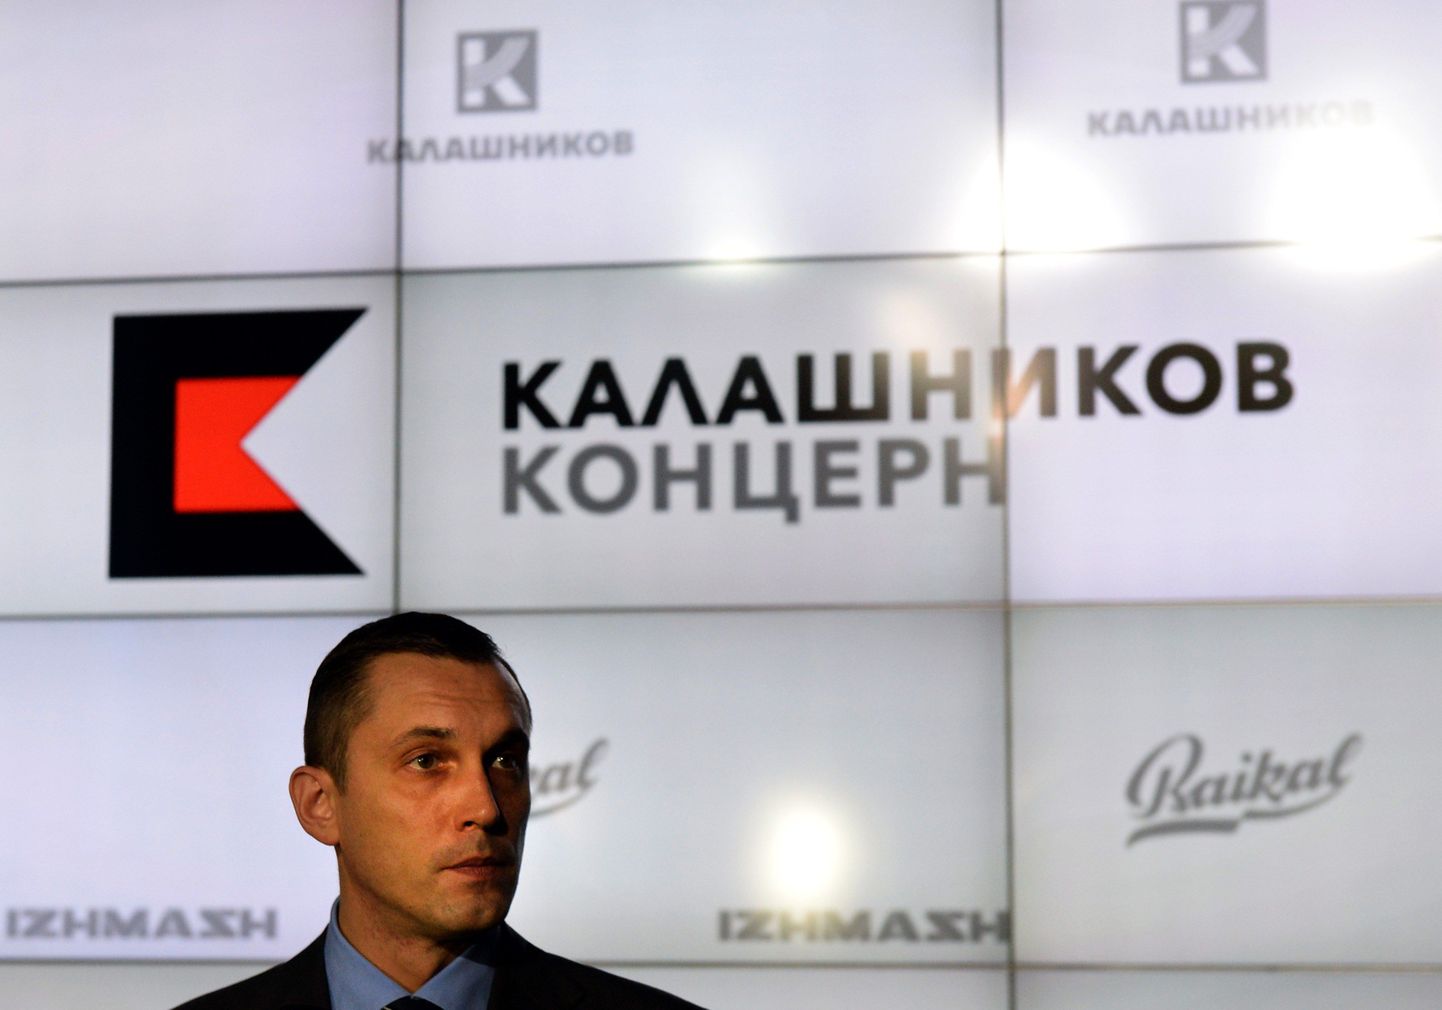 Aleksey Krivoruchko, Kalashnikov kontserni tegevjuht, ettevõtte uue logo esitlusel Moskvas.